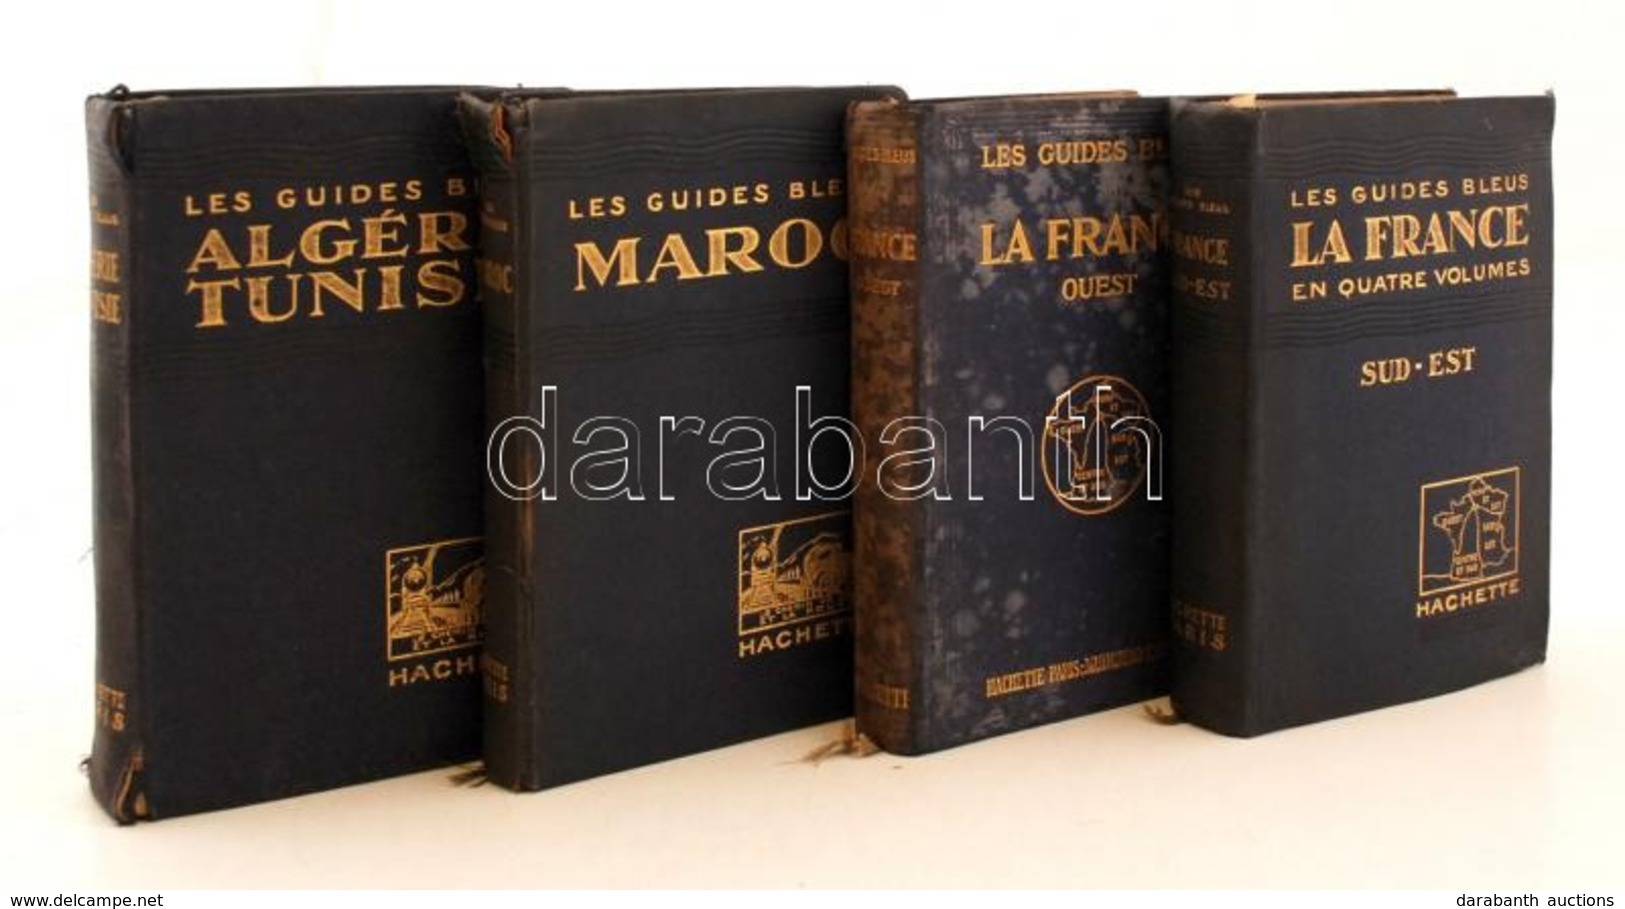 Les Guides Blues Francia Nyelvű útikönyv Sorozat 4 Kötete. (La France - Sud-est, La France - Quest, Maroc, Algérie-Tunis - Non Classés